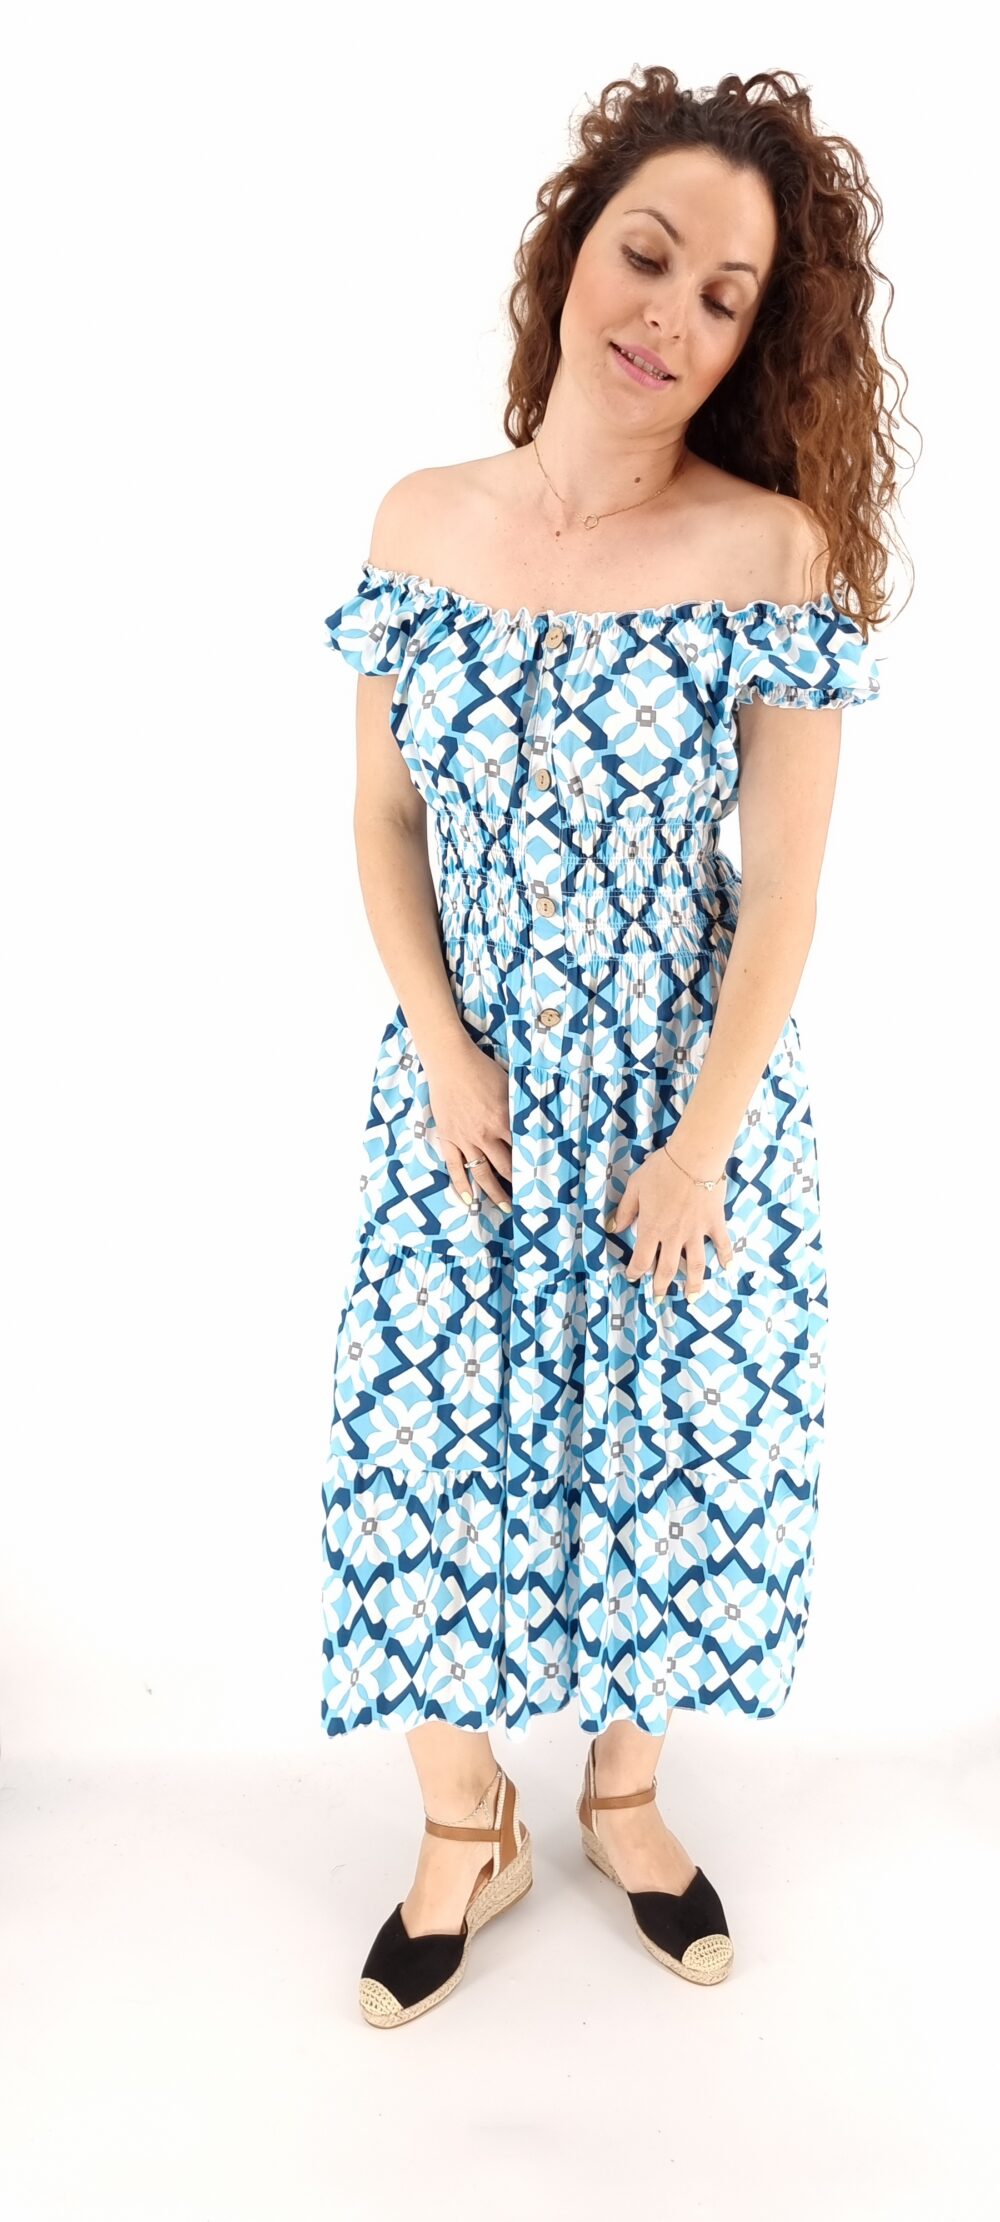 Φόρεμα με σχέδια midi με σφιγγοφωλιά και διακοσμητικά κουμπιά γαλάζιο